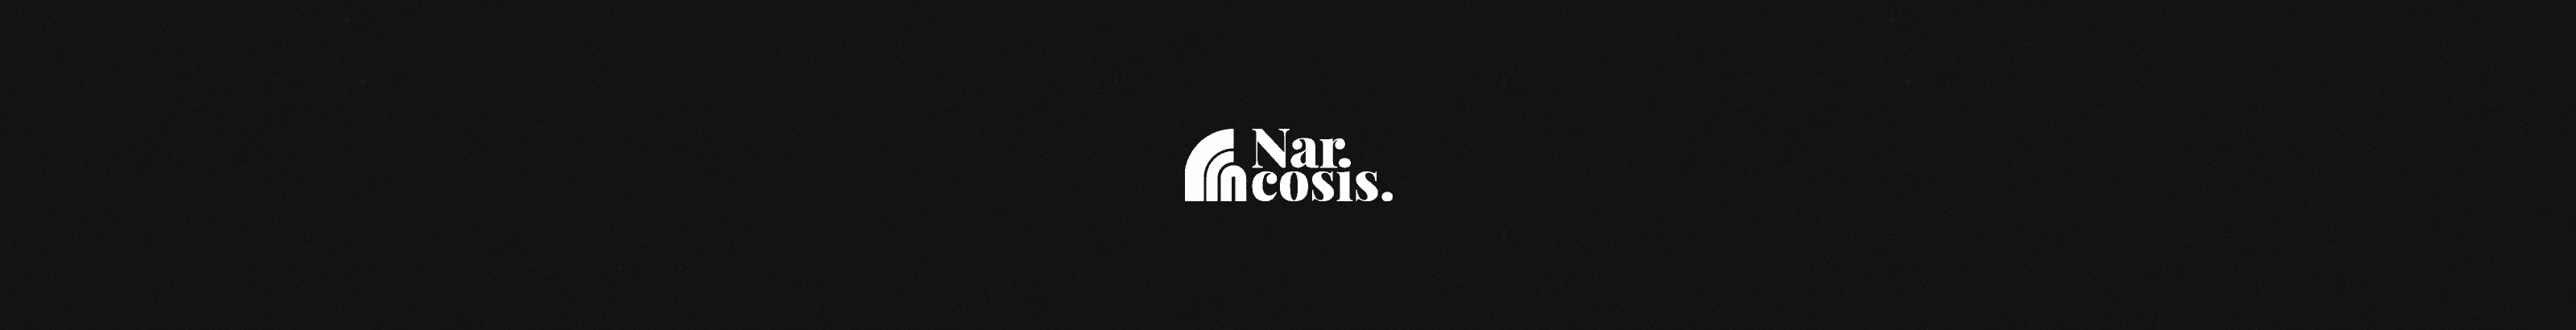 Narcosis 横幅